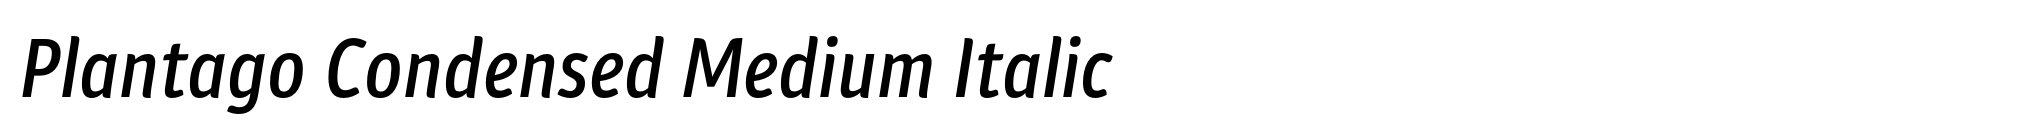 Plantago Condensed Medium Italic image